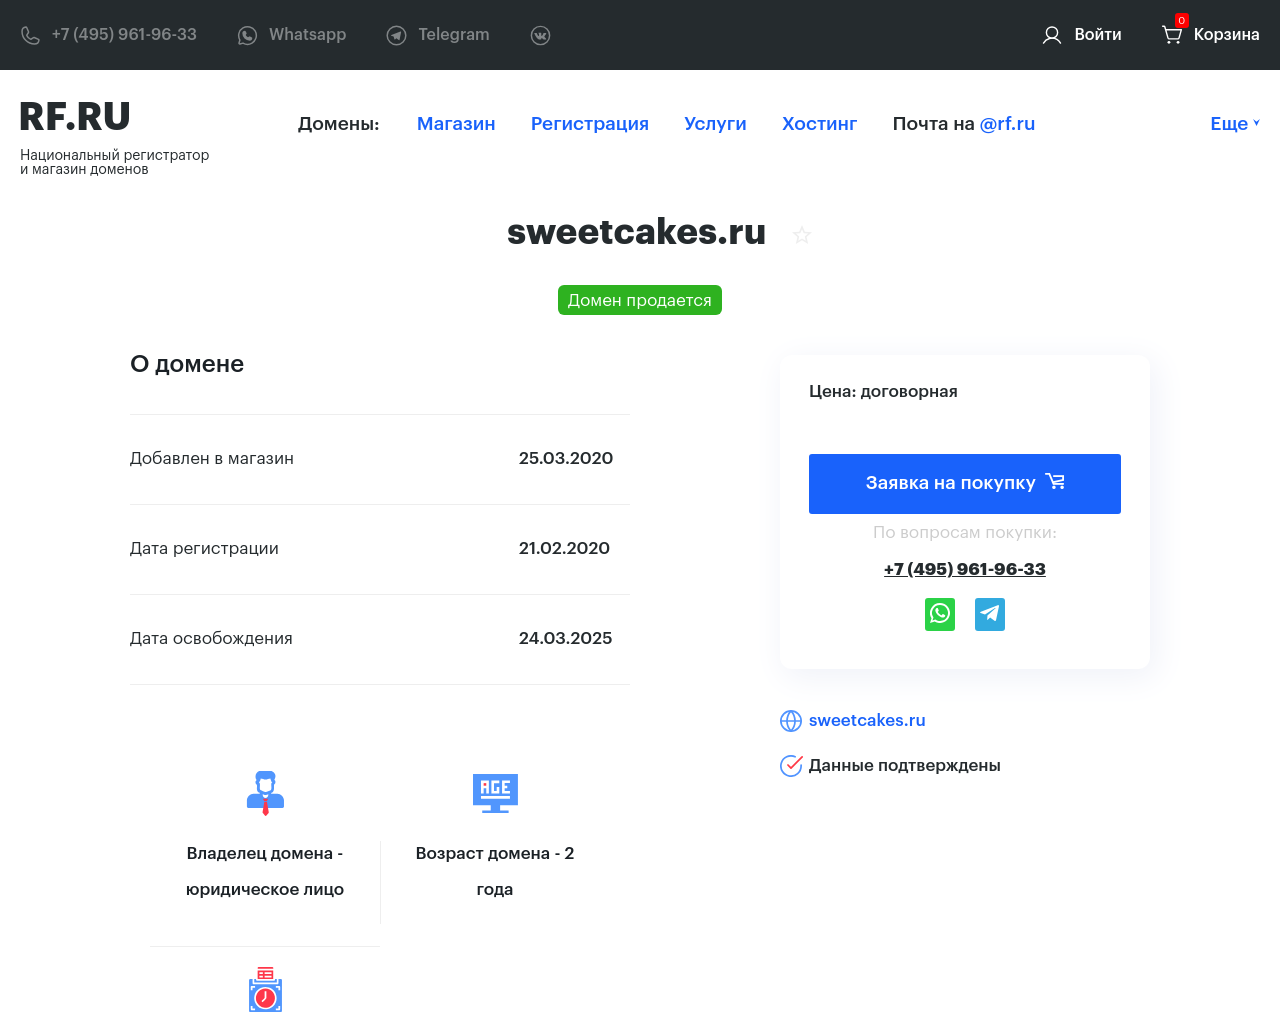 sweetcakes.ru